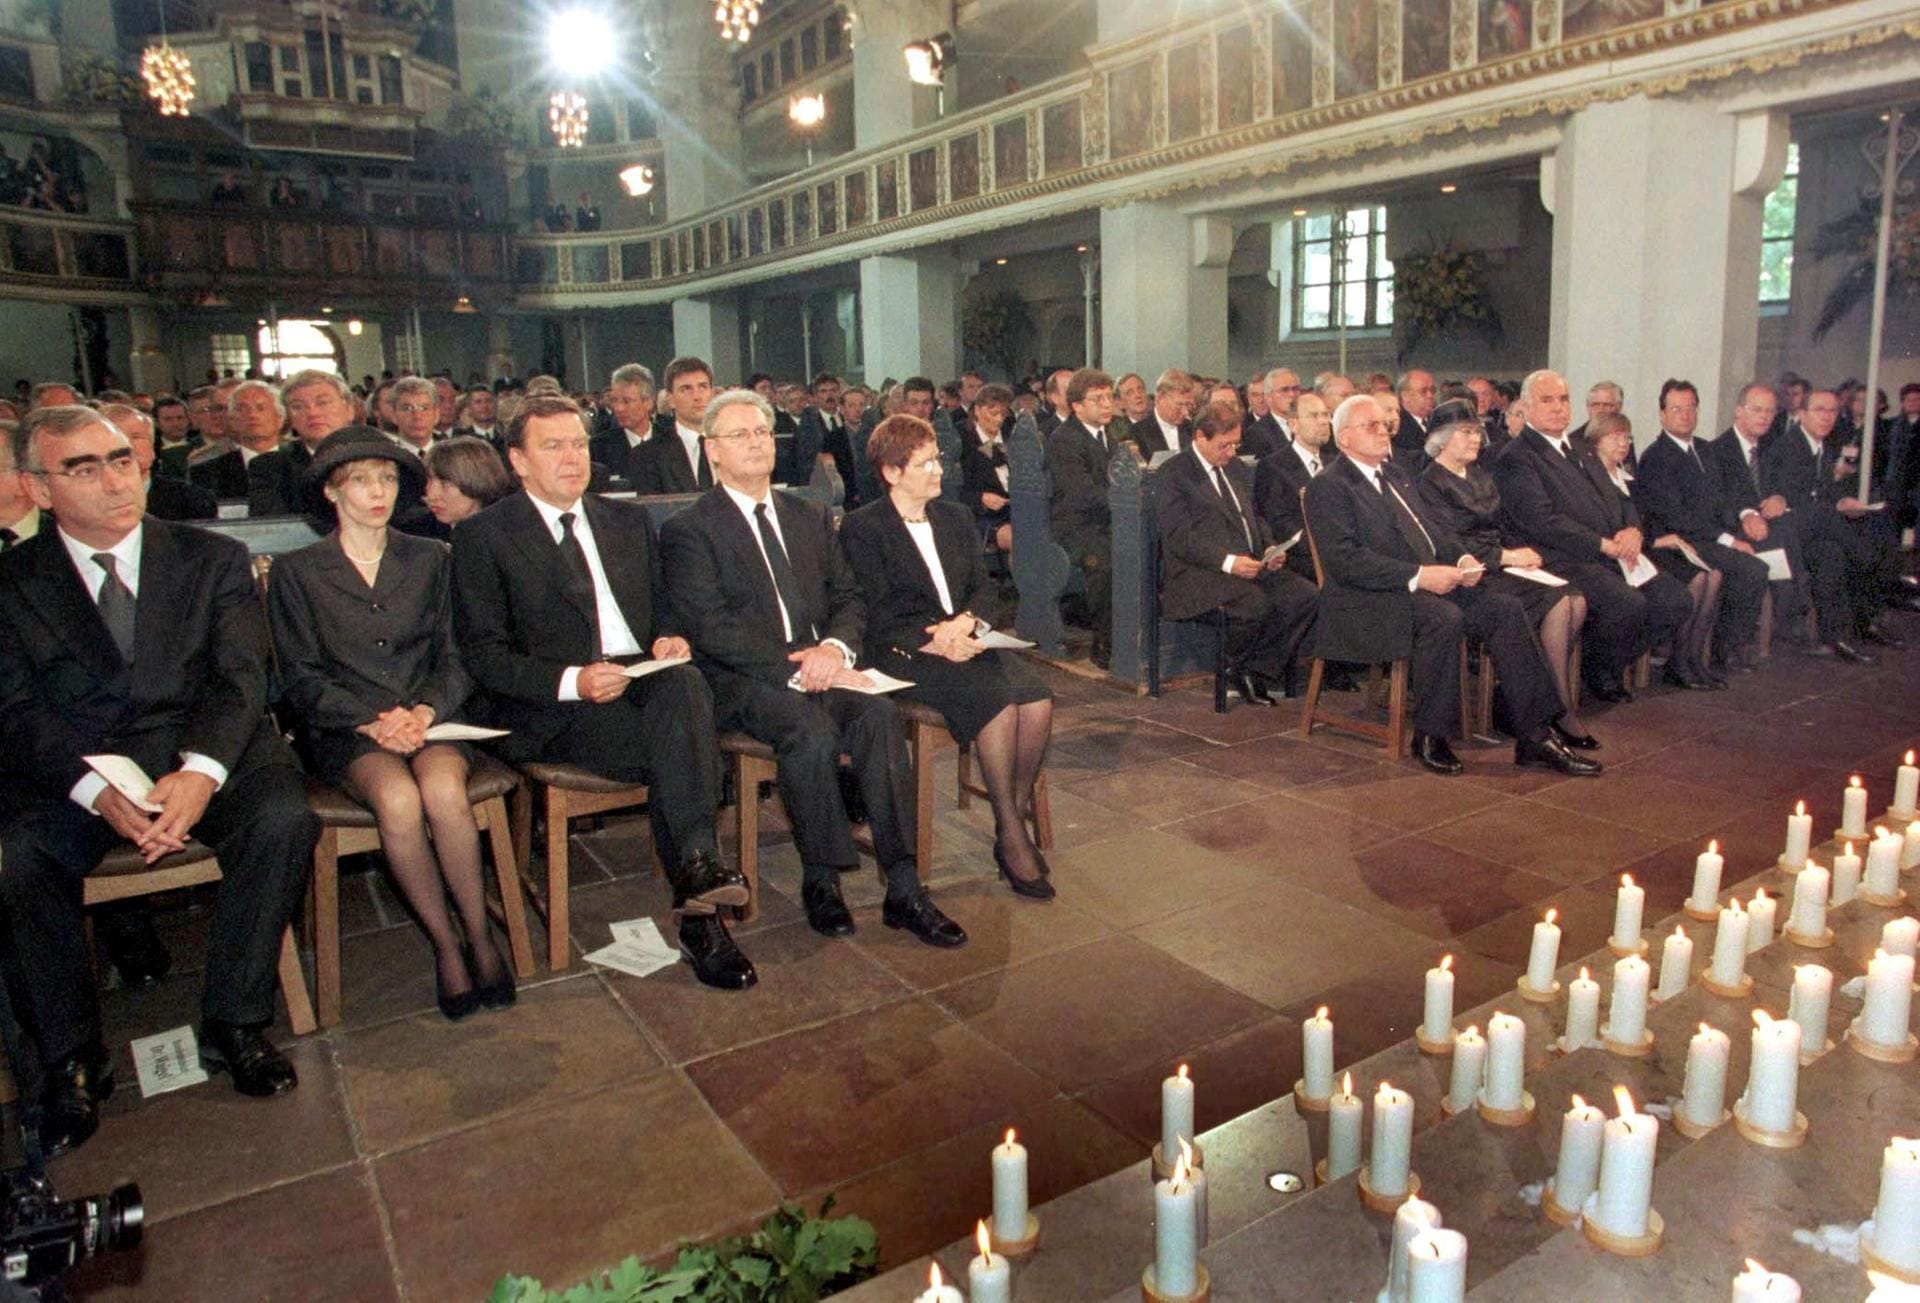 Knapp drei Wochen nach dem Unglück trafen bei einer zentralen Trauerfeier Bundeskanzler Helmut Kohl und andere hochrangige Politiker auf Überlebende und Angehörige des größten Zugunglücks der Nachkriegszeit. Dass die Politiker vor den Hinterbliebenen saßen, wurde von vielen kritisiert.